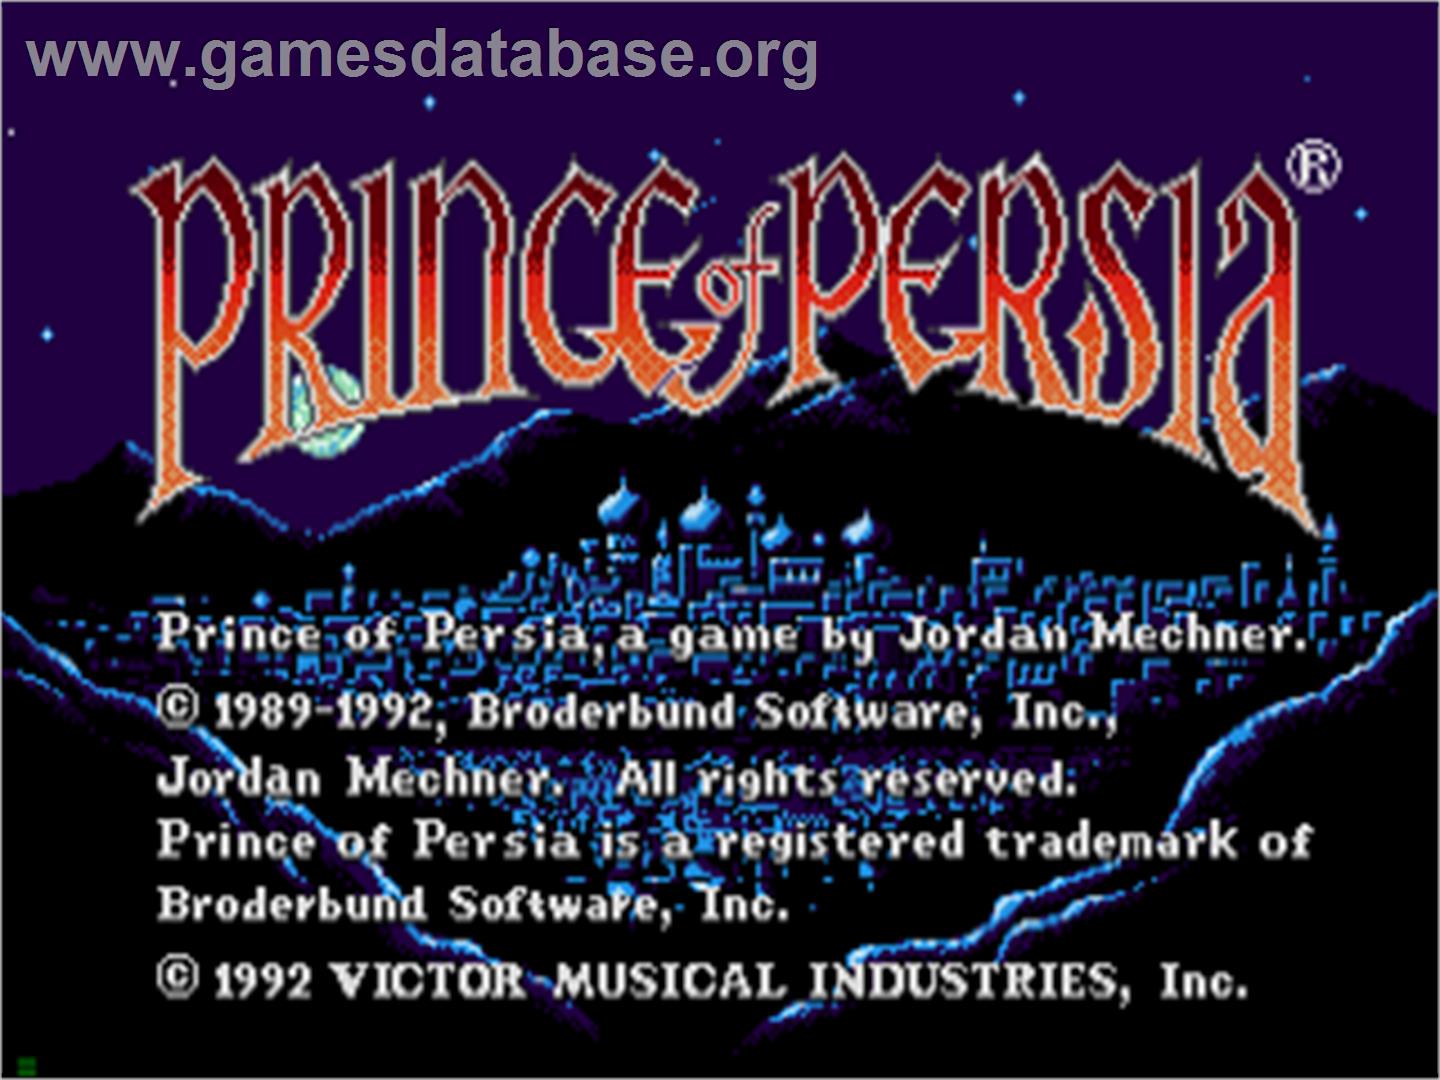 Prince of Persia - Sega CD - Artwork - Title Screen